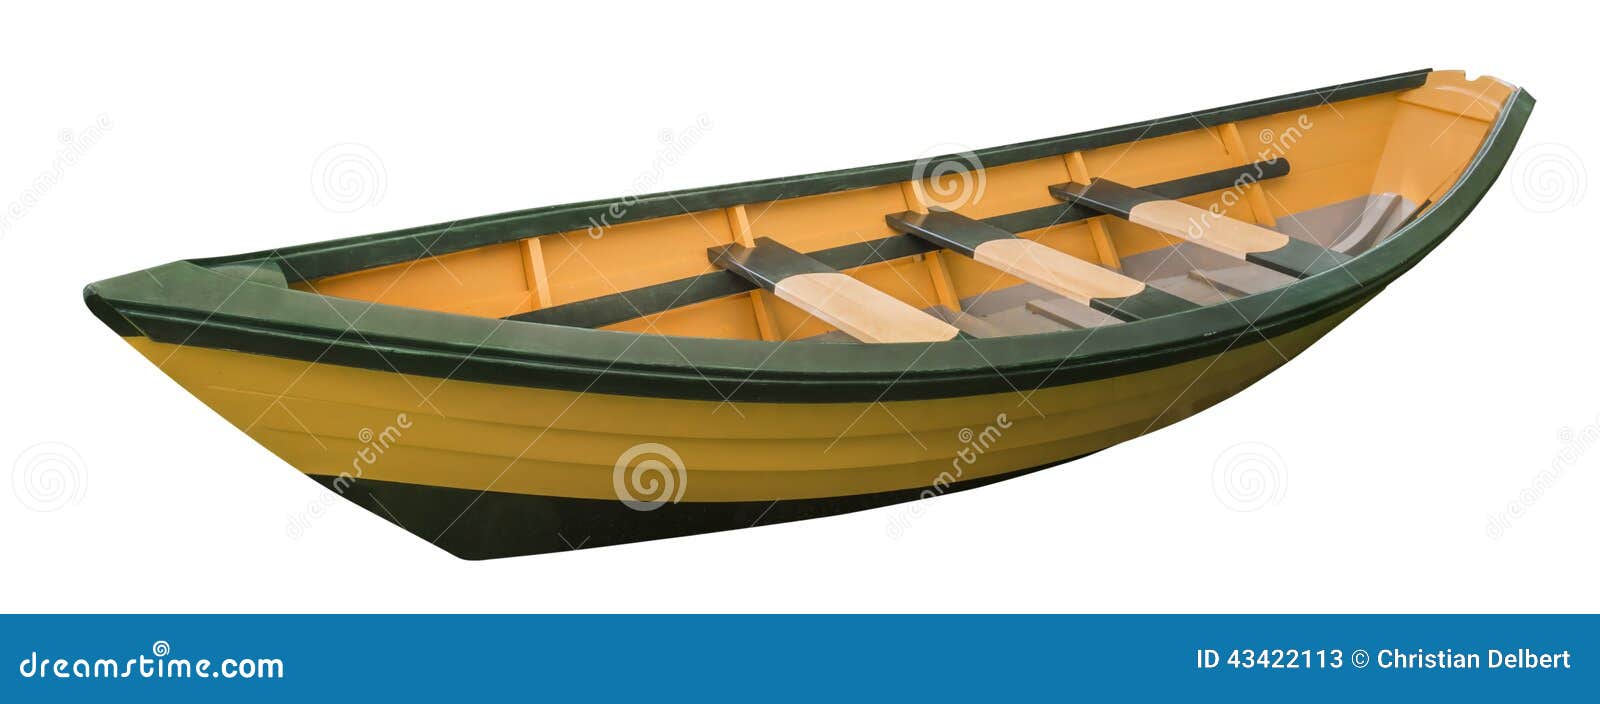 Dory Rowboat, Isolated Stock Photo - Image: 43422113